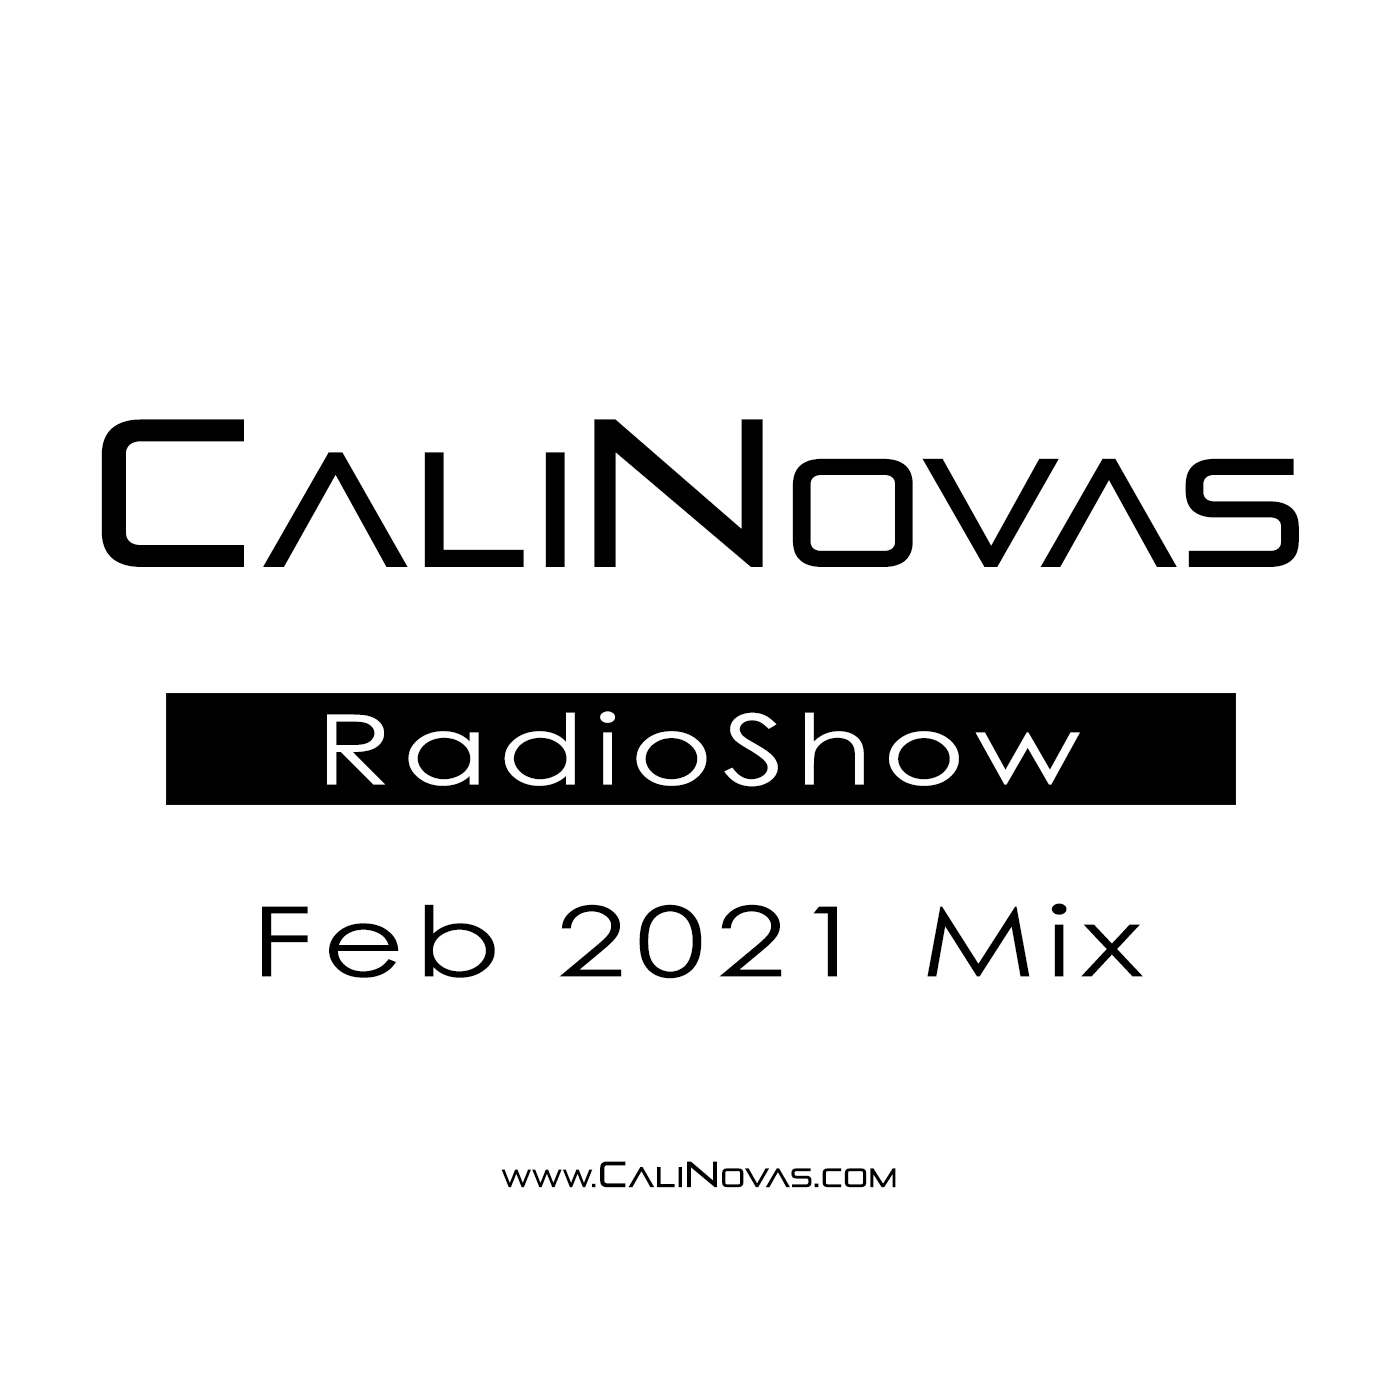 CaliNovas Radio Show - February 2021 Mix